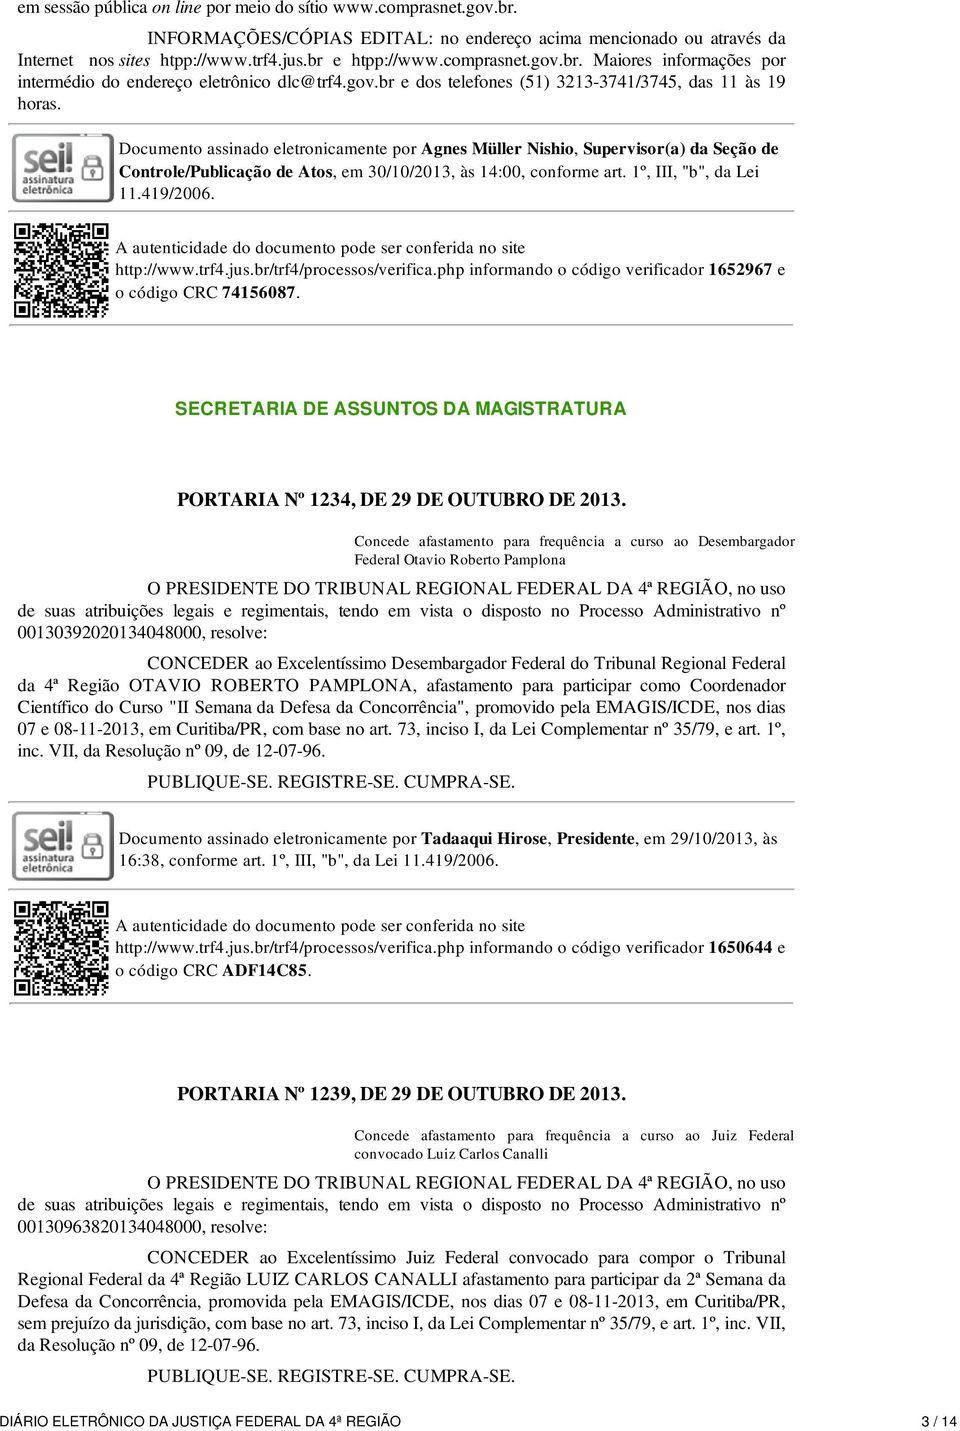 Documento assinado eletronicamente por Agnes Müller Nishio, Supervisor(a) da Seção de Controle/Publicação de Atos, em 30/10/2013, às 14:00, conforme art. 1º, III, "b", da Lei 11.419/2006. http://www.